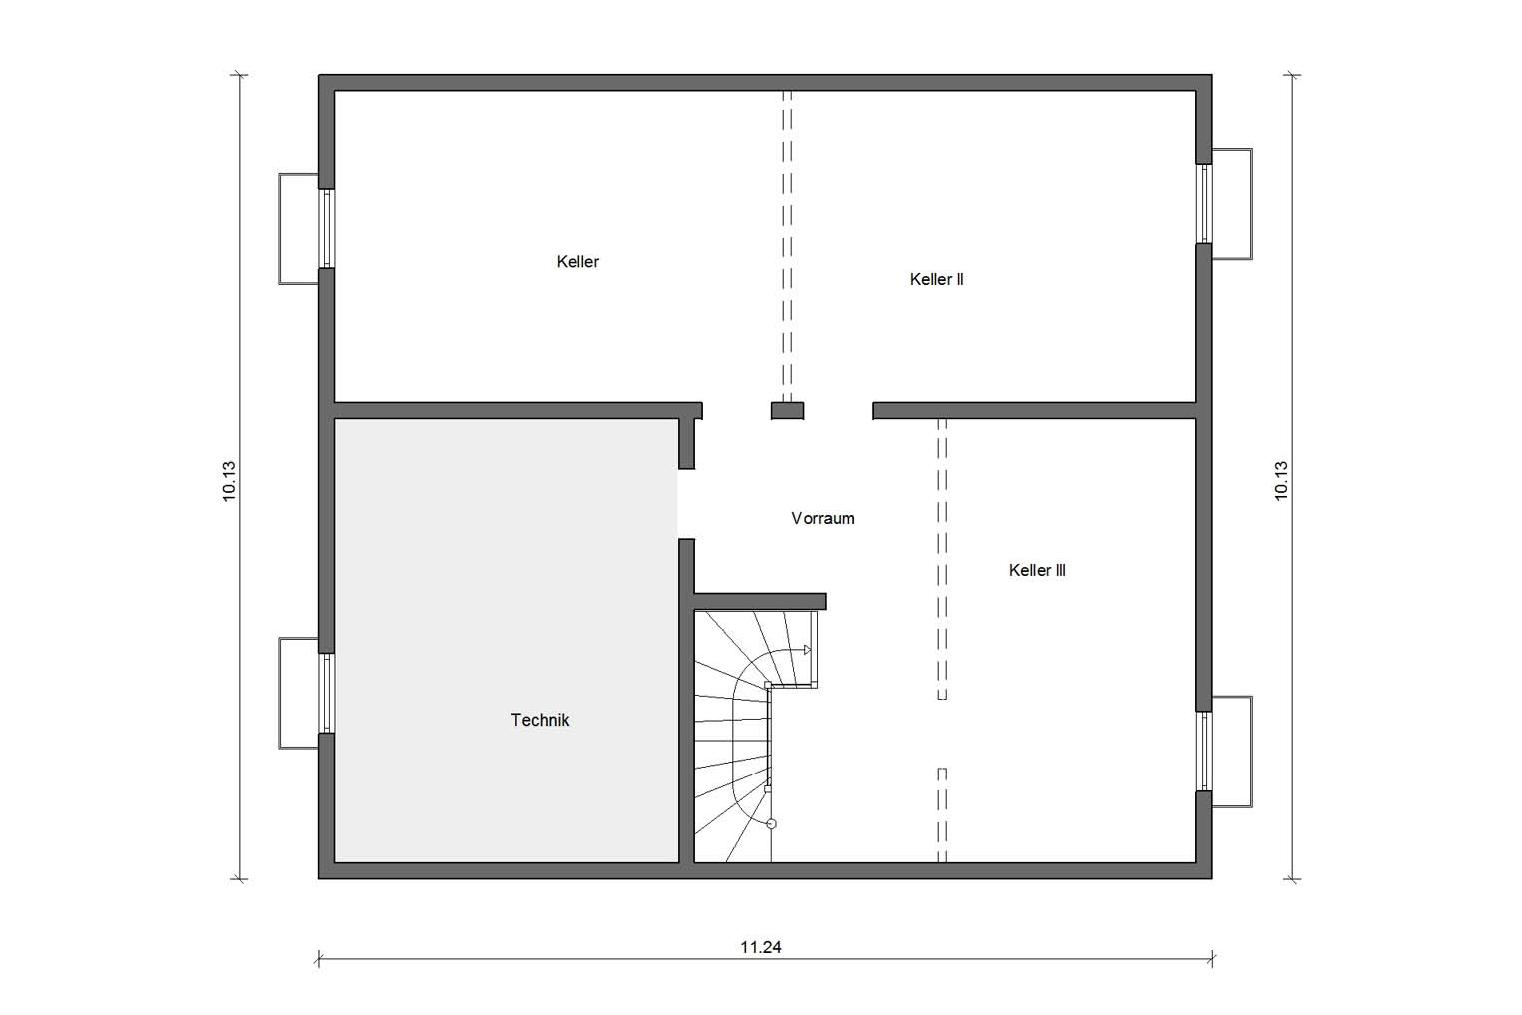 Floor plan basement floor M 15-199.2 two-family house